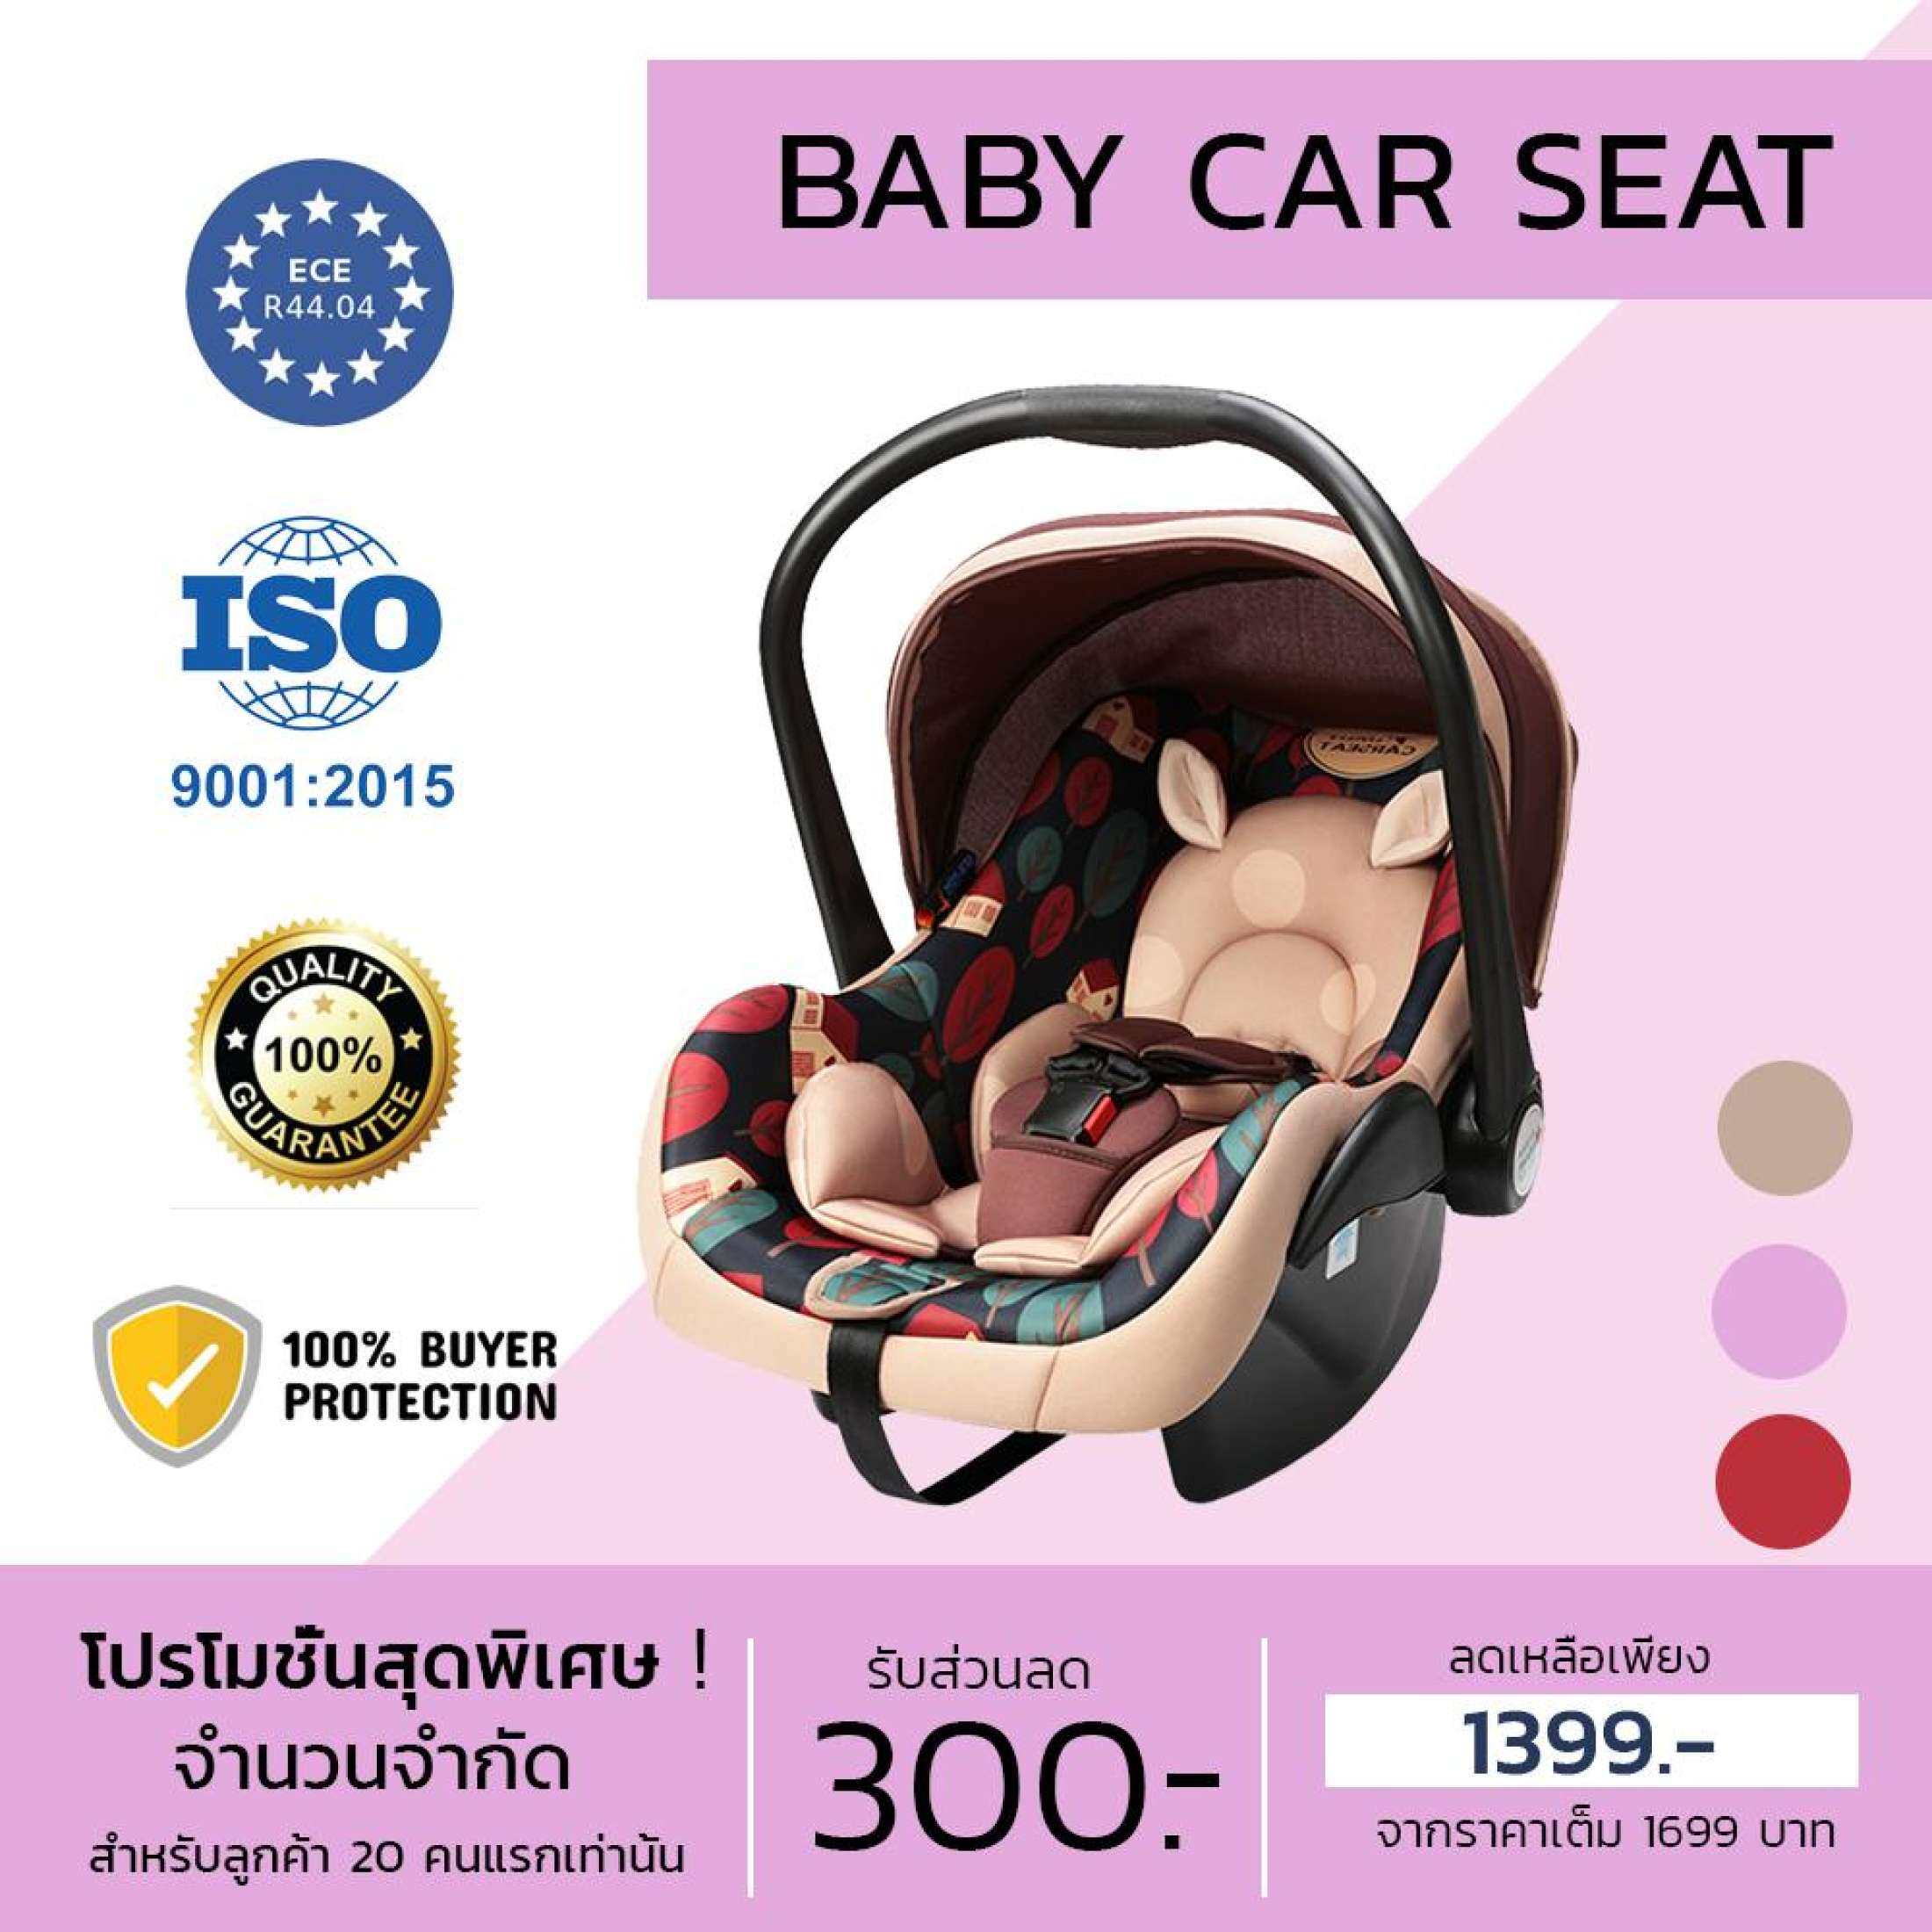 Baby Car Seat คาร์ซีท คาร์ซีทสำหรับเด็กแรกเกิด - 15 เดือน ผ่านมาตรฐานการรับรองCE คุณภาพสูง ราคาถูก คาร์ซีทเด็ก  คาร์ซีทแบบพกพา เบาะรองคาร์ซีท คาร์ซีทแบบกระเช้า อุปกรณ์เสริมรถเข็นคาร์ซีท รถเข็นเด็กเล็ก  สำหรับเด็กอายุ 0-15 เดือน